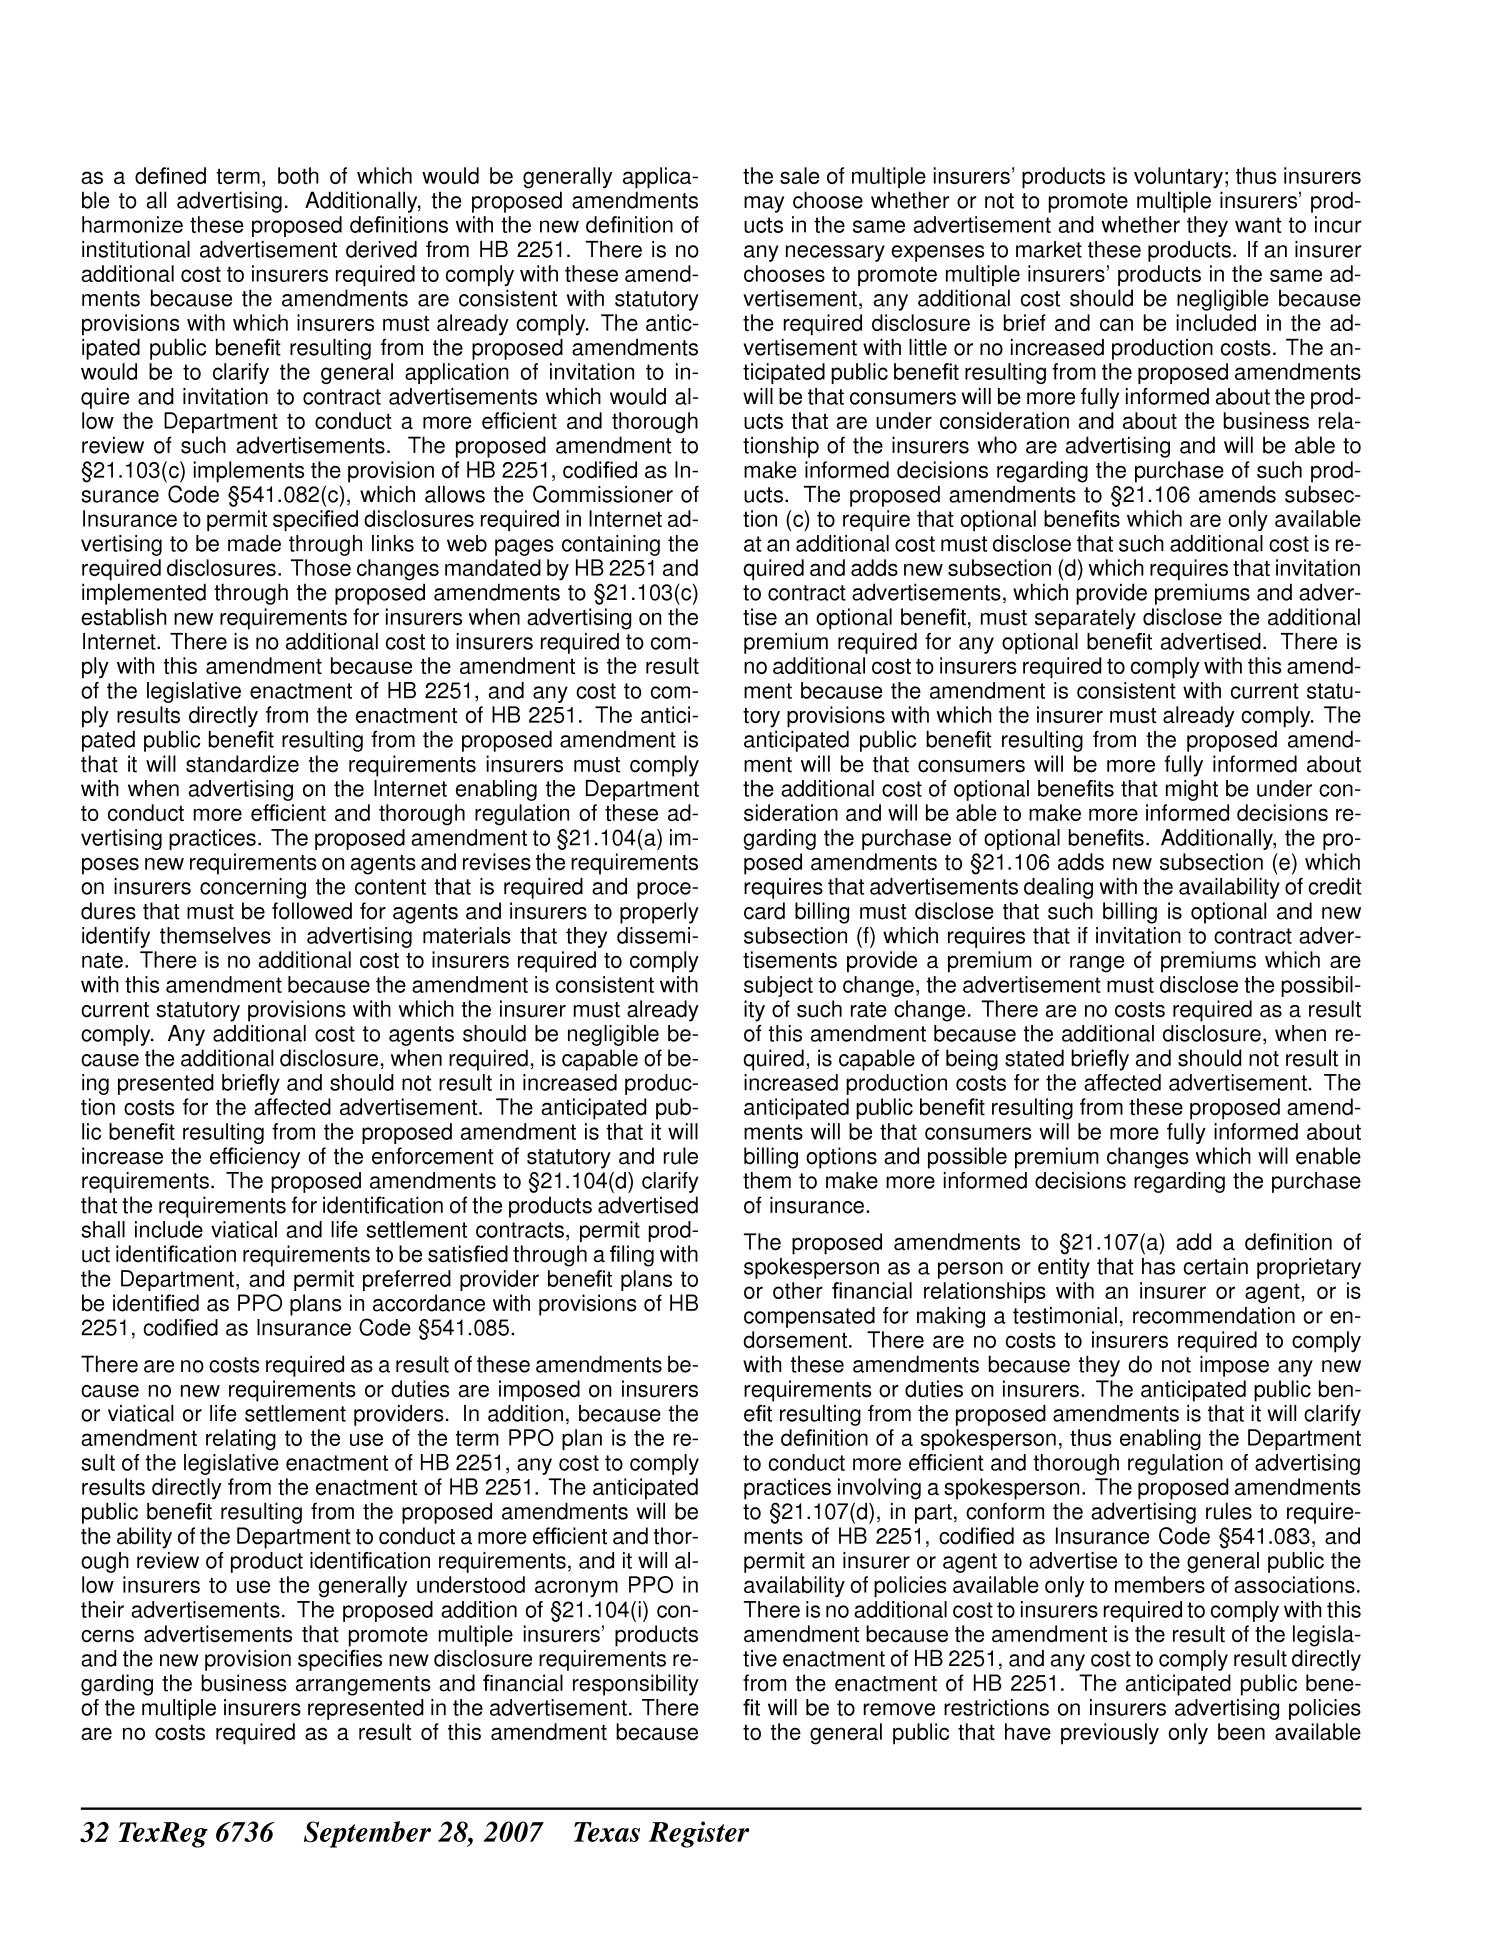 Texas Register, Volume 32, Number 39, Pages 6689-6904, September 28, 2007
                                                
                                                    6736
                                                